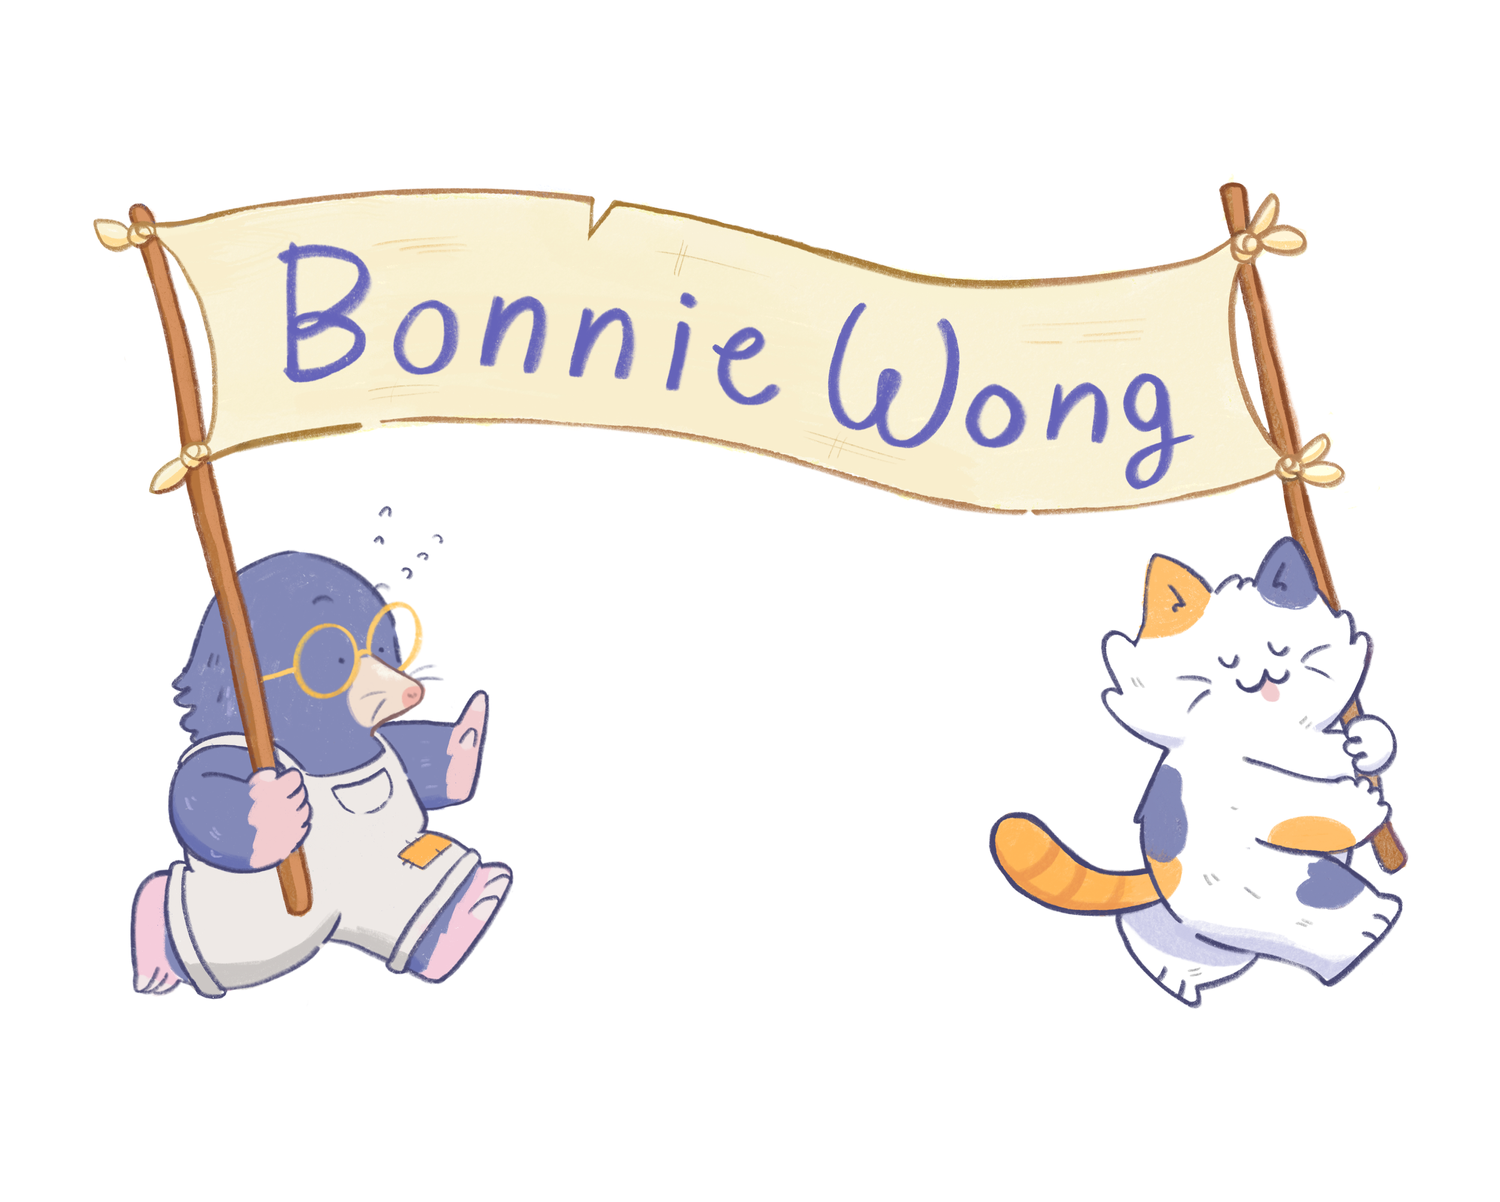 Bonnie Wong